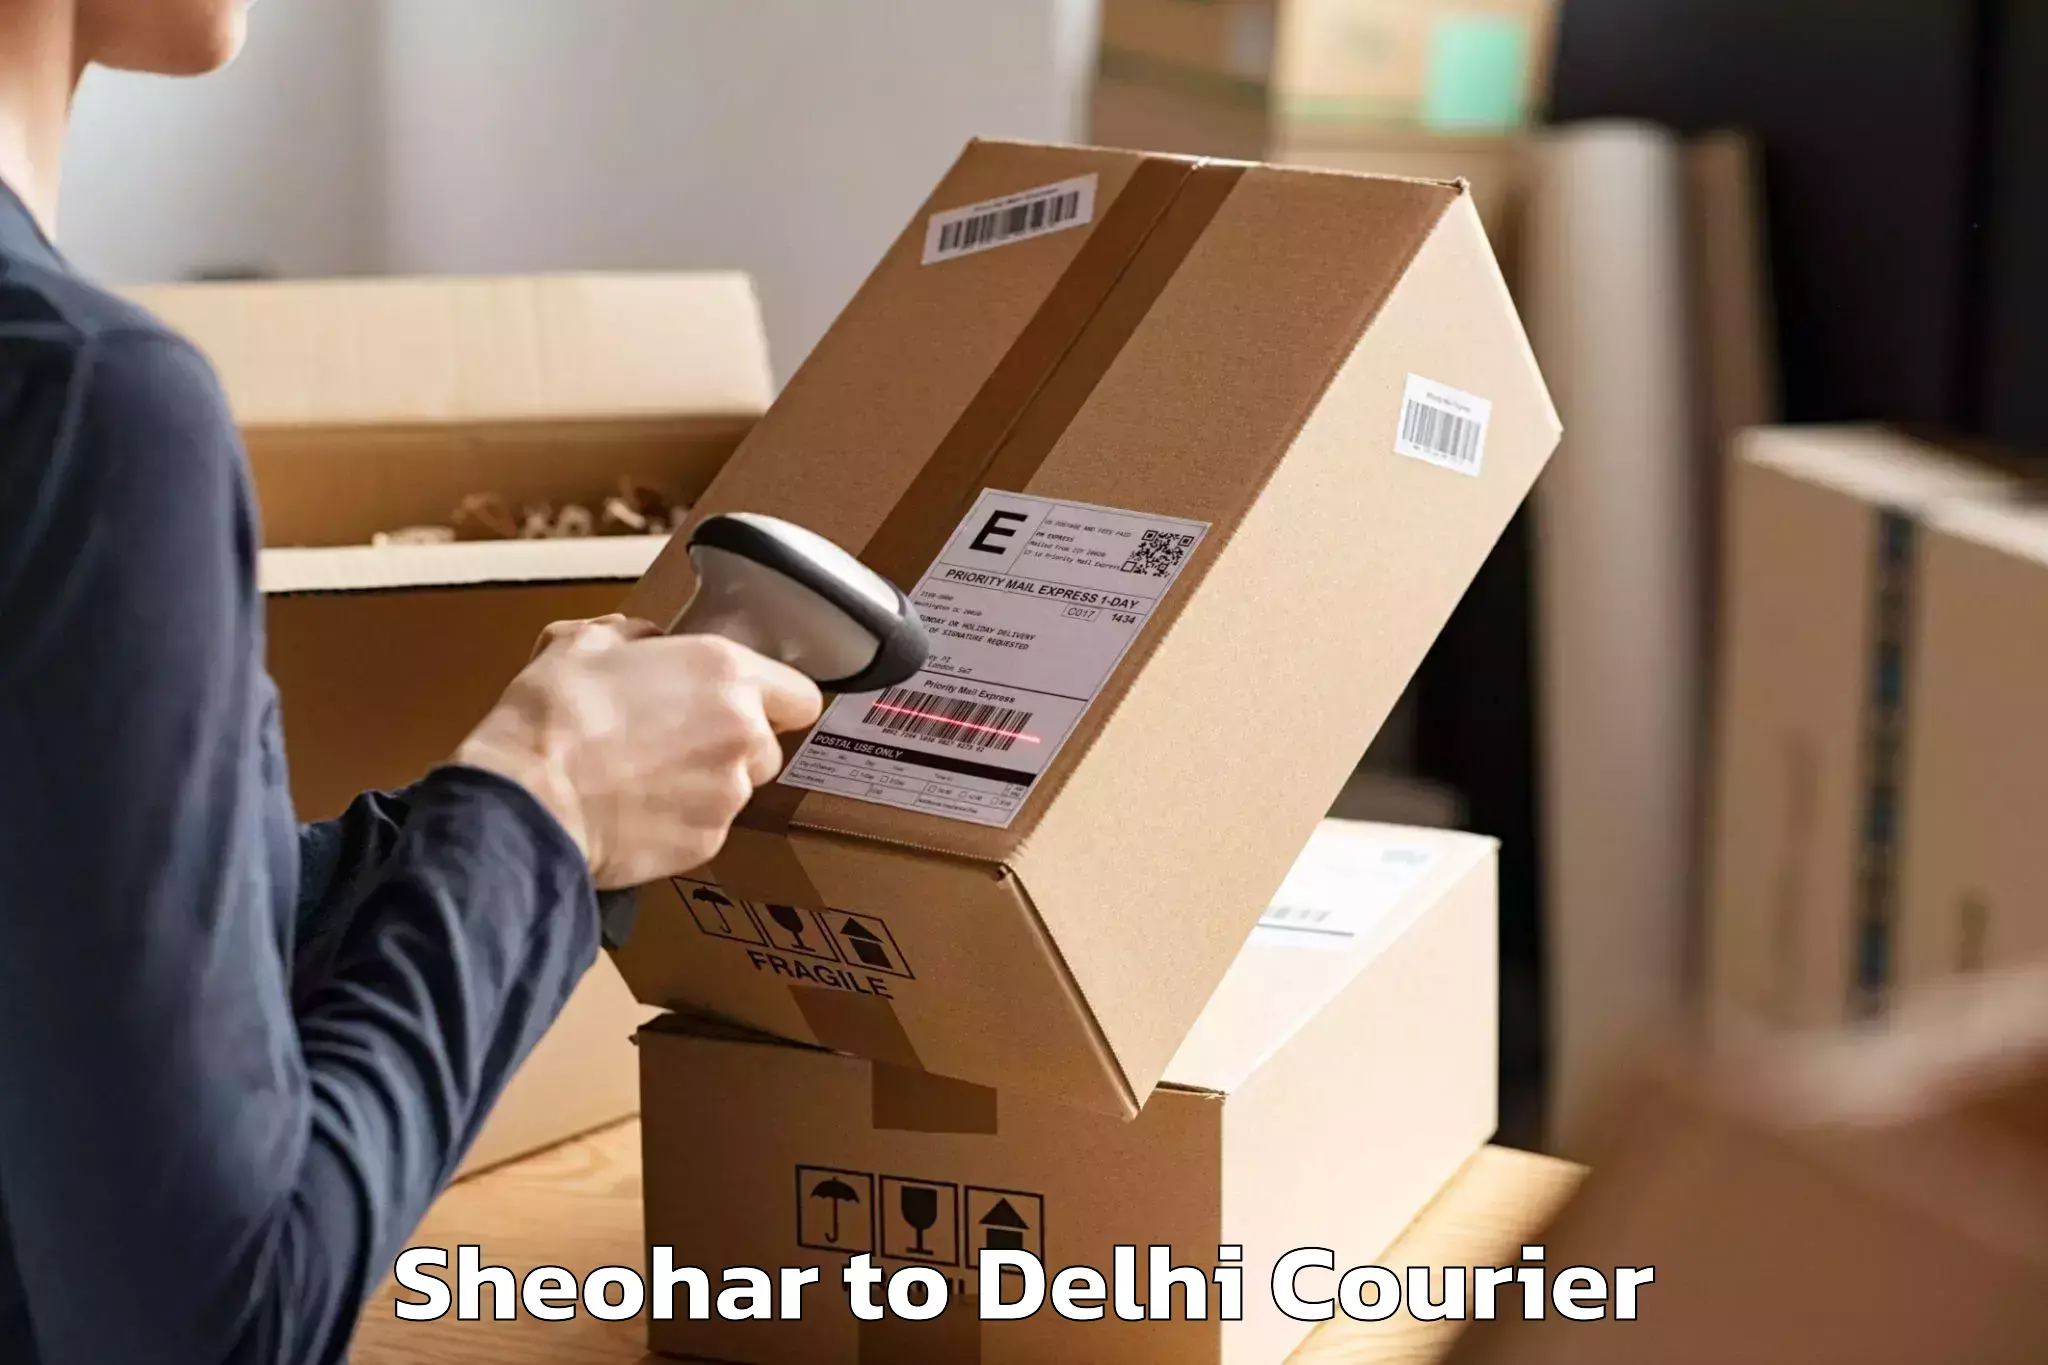 Household goods transport service Sheohar to University of Delhi